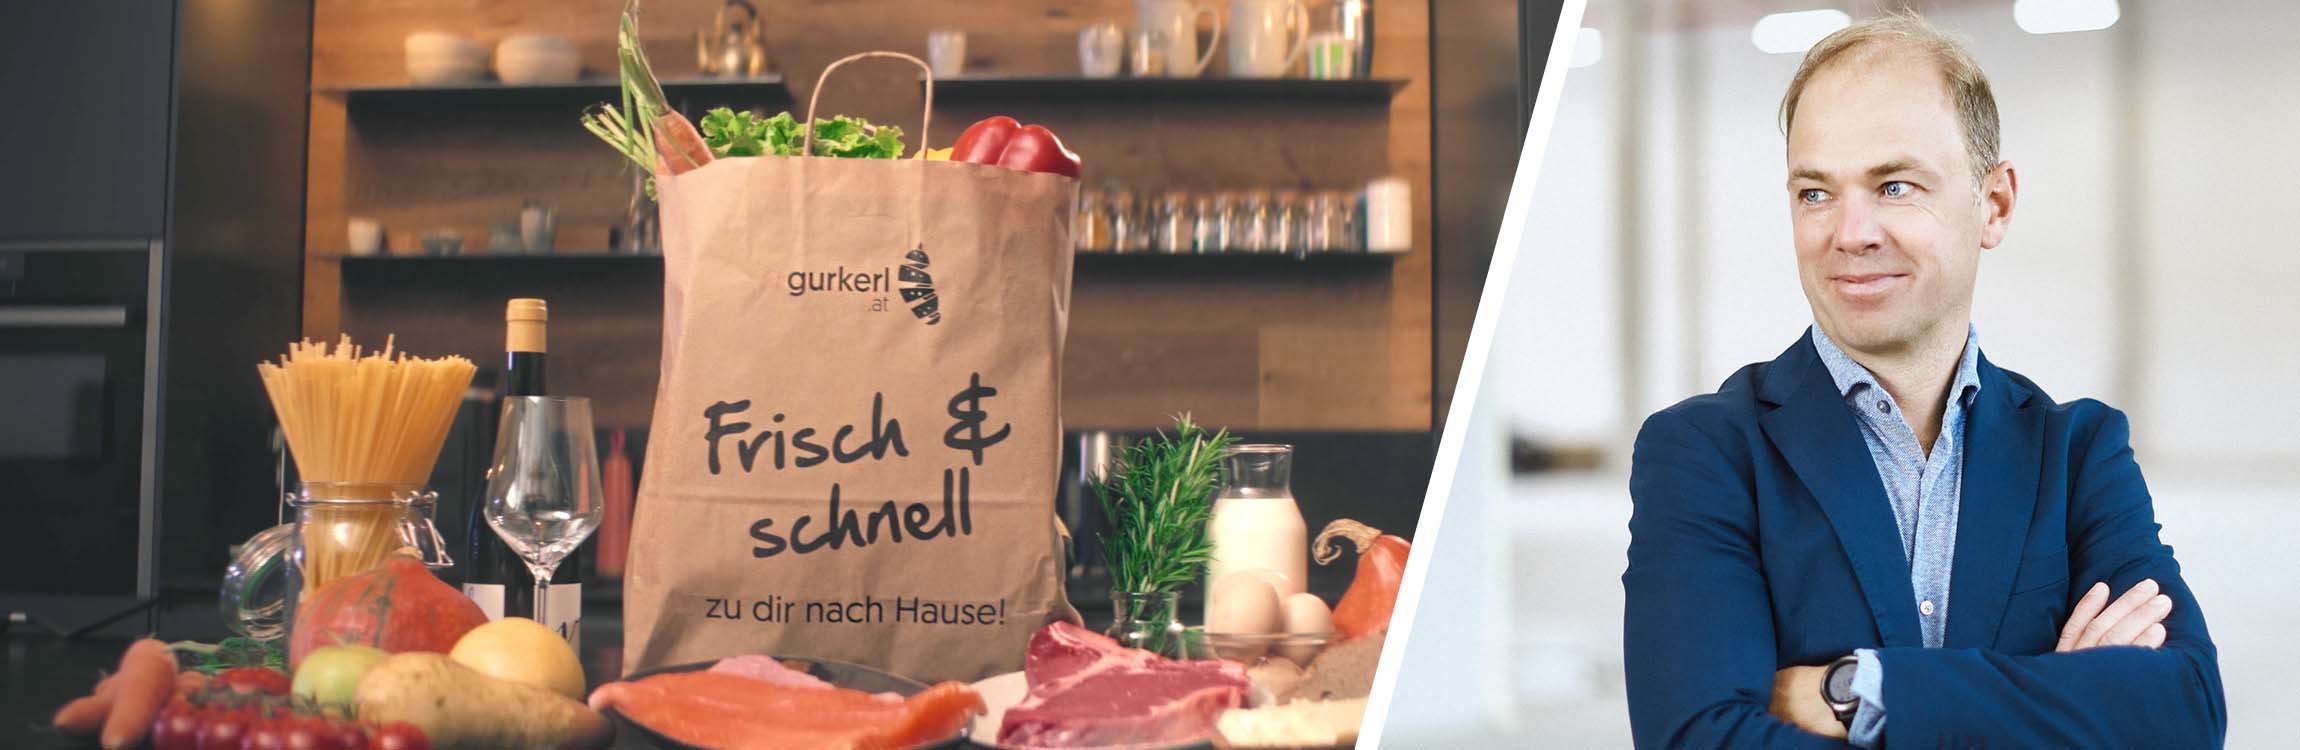 Gurkerl.at: schnelles und frisches Online-Shopping mit Service-Automatisierung.